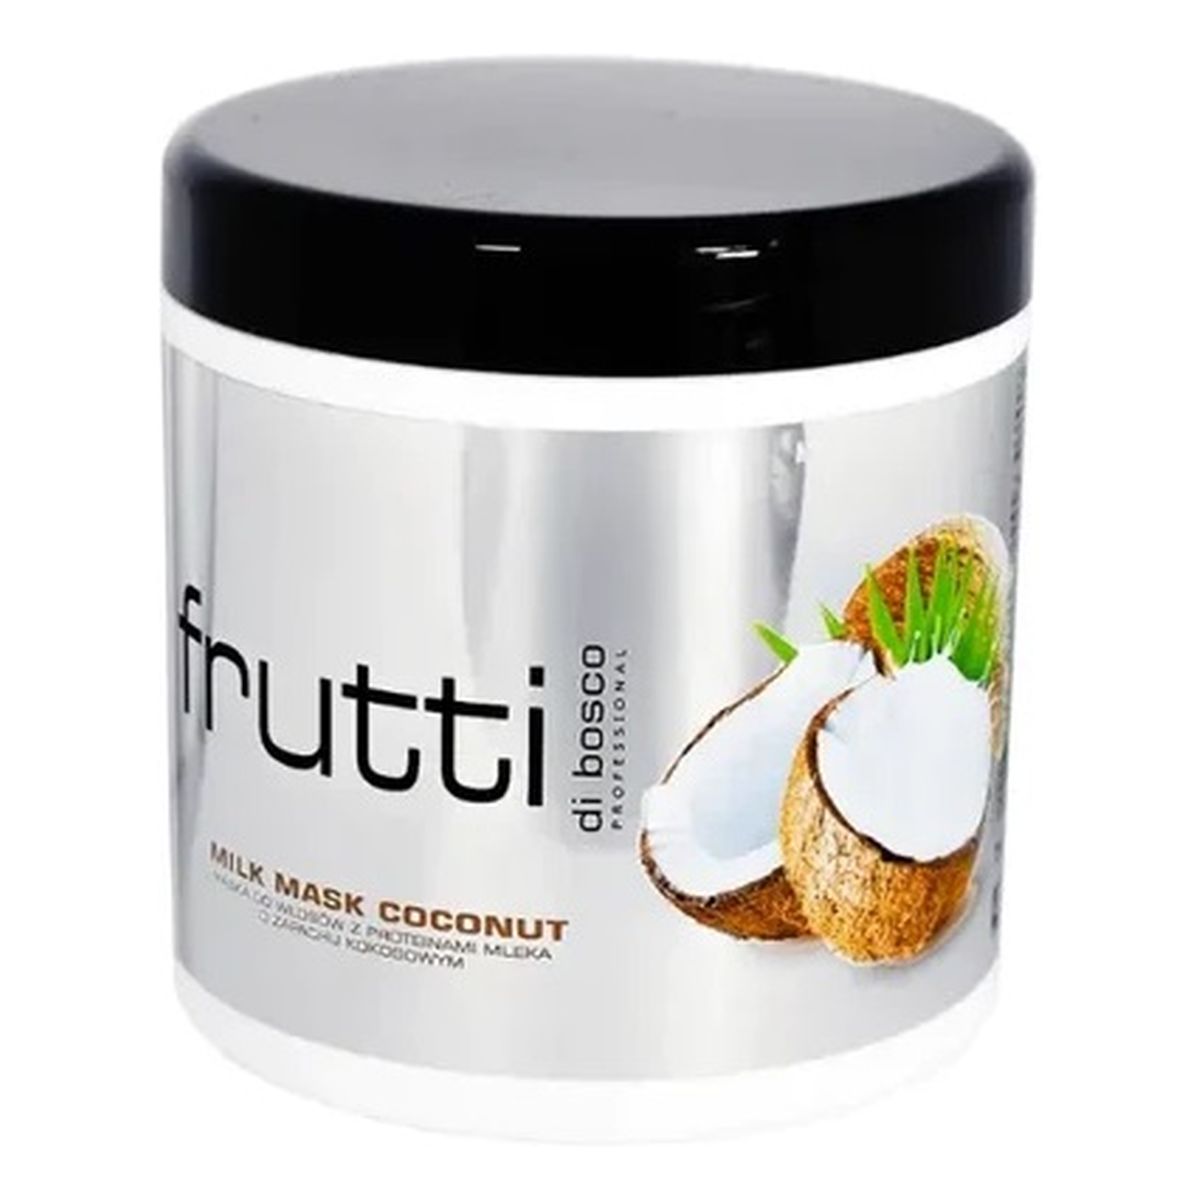 Frutti Professional Coconut rewitalizująca maska do włosów 1000ml